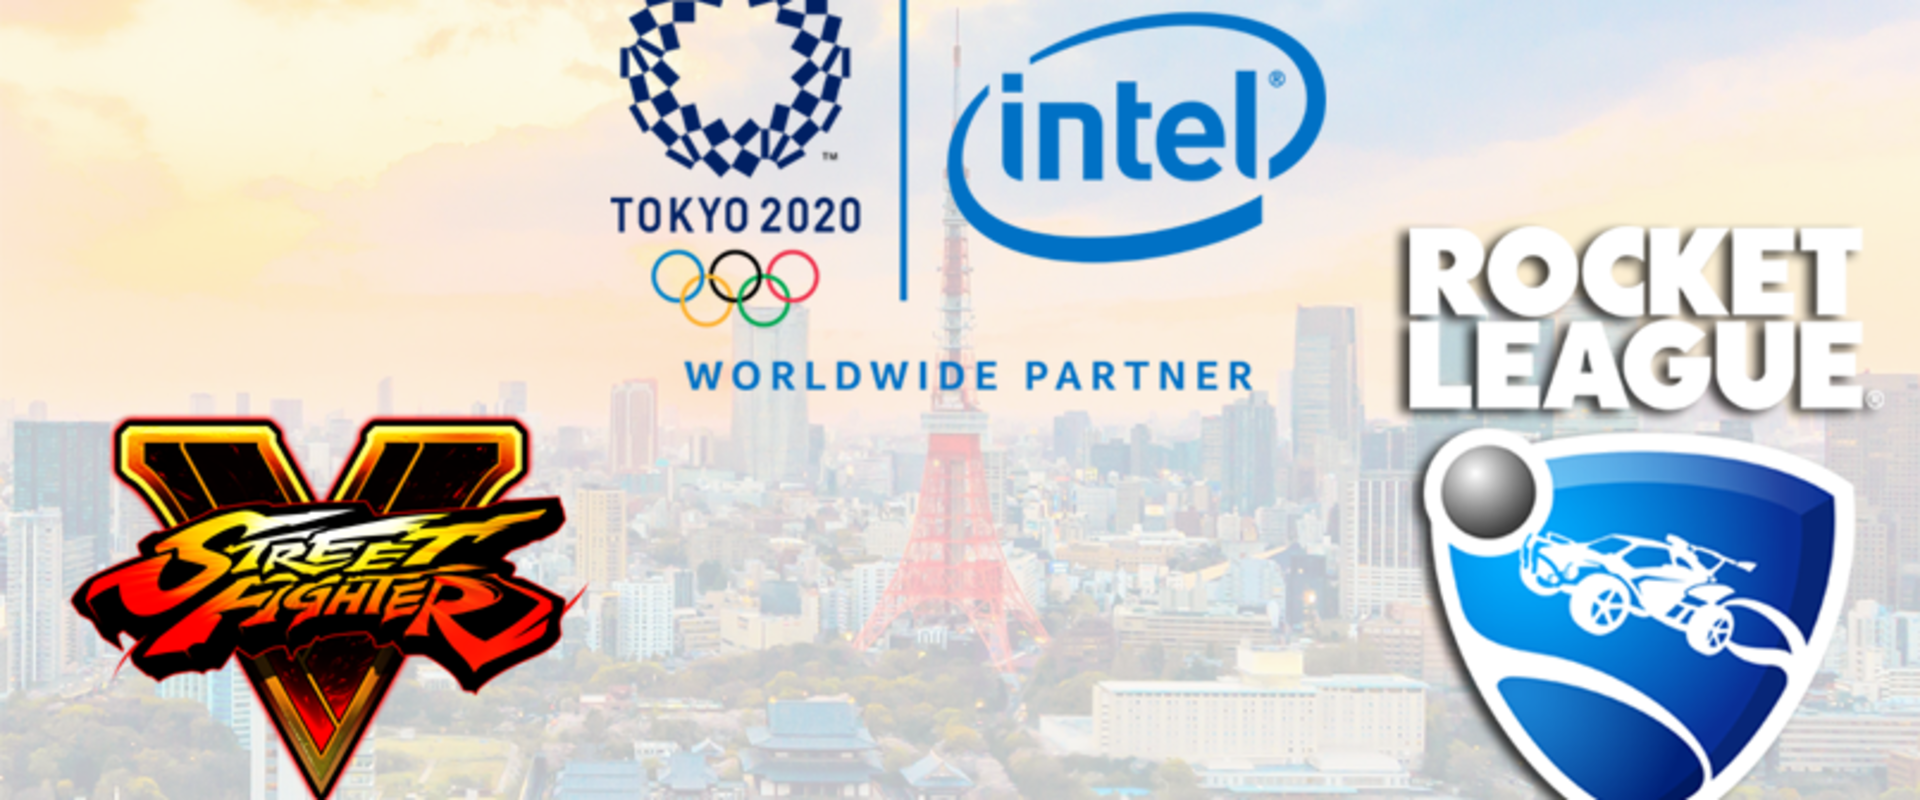 Tokió 2020 - Rocket League-gel és a Street Fighter V-tel vezetik fel az olimpiát